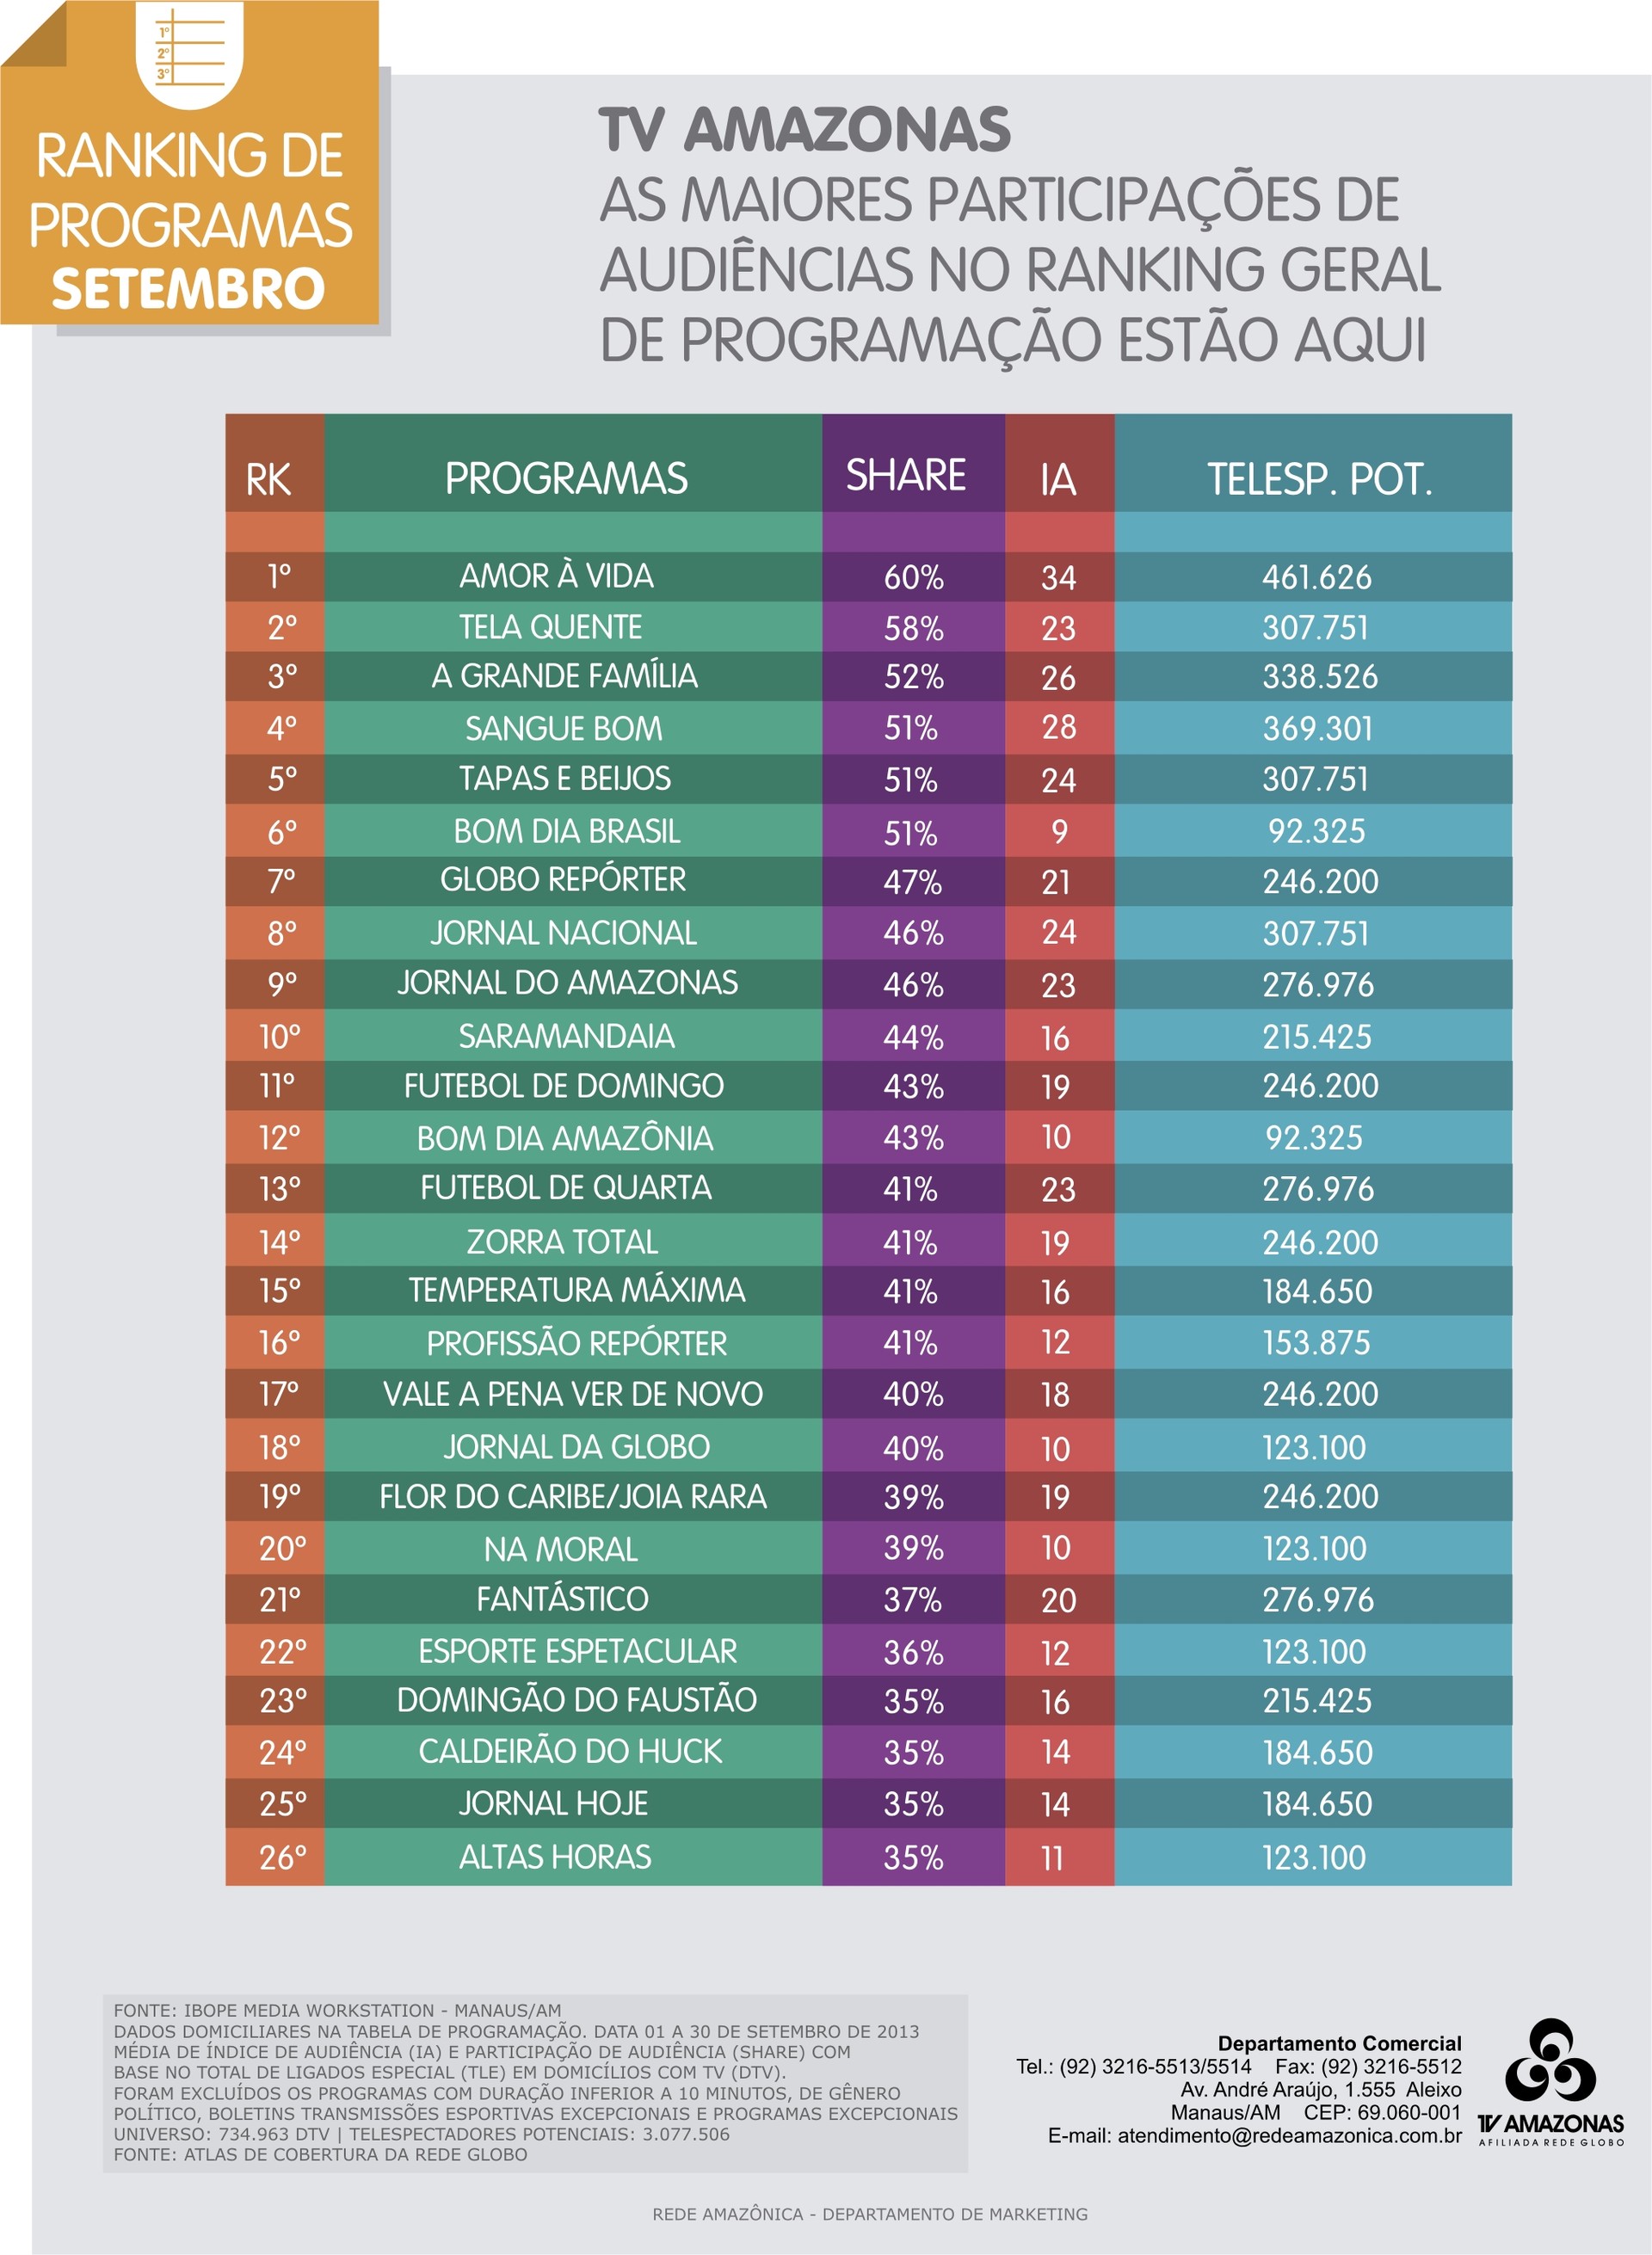 TV Amazonas - Ranking de programas (Foto: TV Amazonas) (Foto: TV Amazonas)